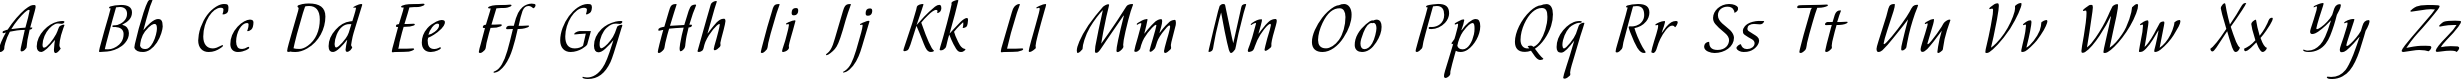 Пример написания английского алфавита шрифтом Hortensia